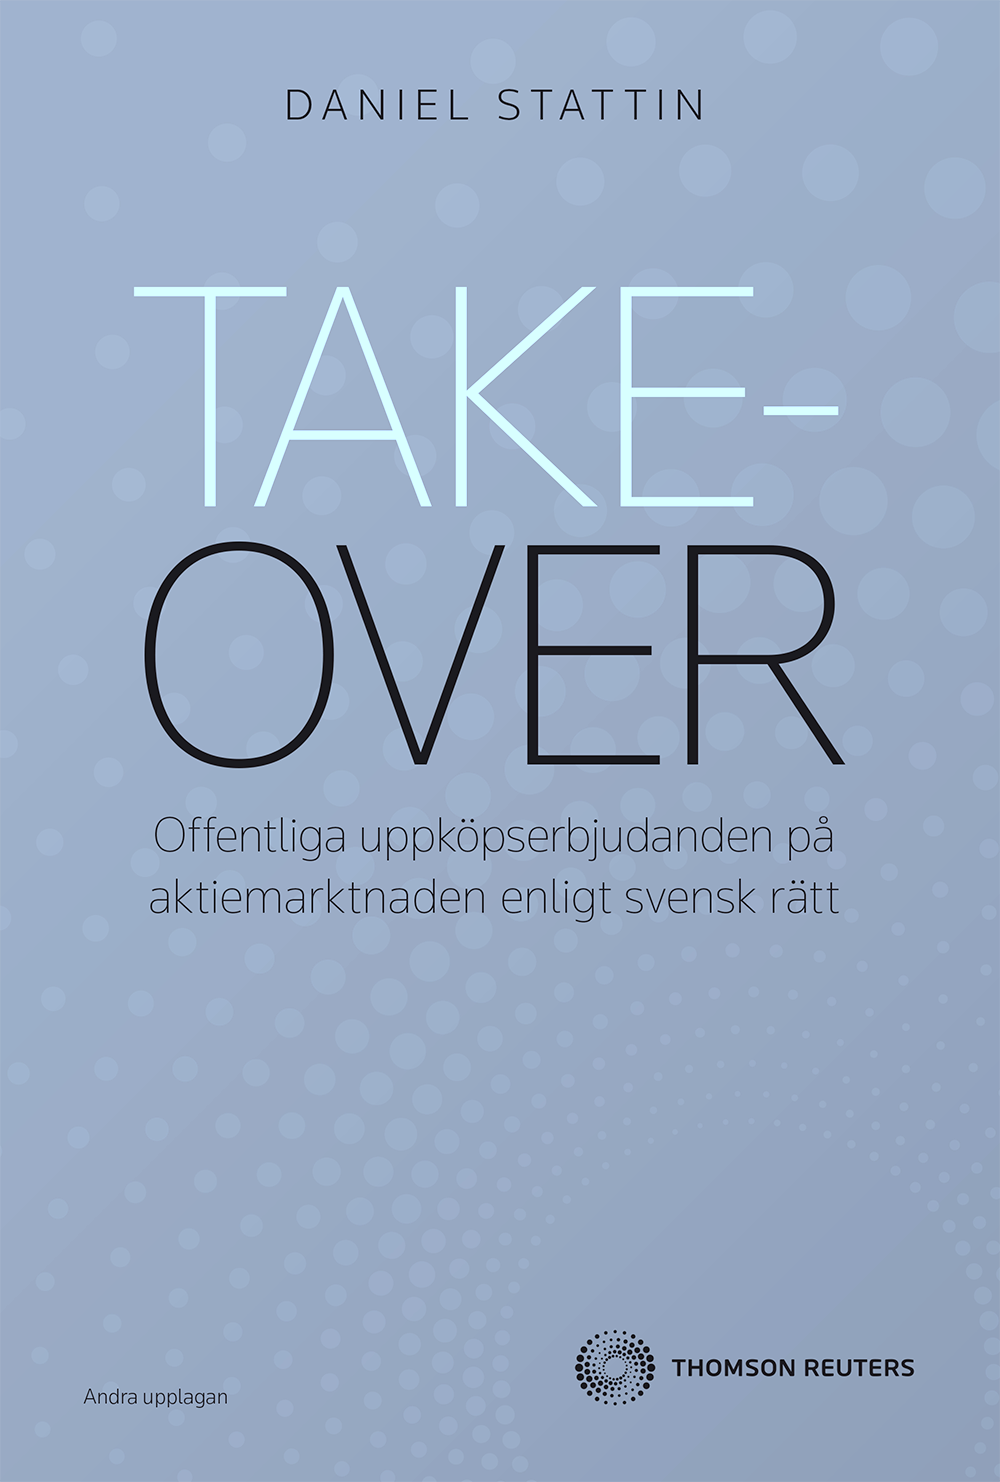 Takeover - offentliga uppköpserbjudanden på aktiemarknaden enligt svensk rä